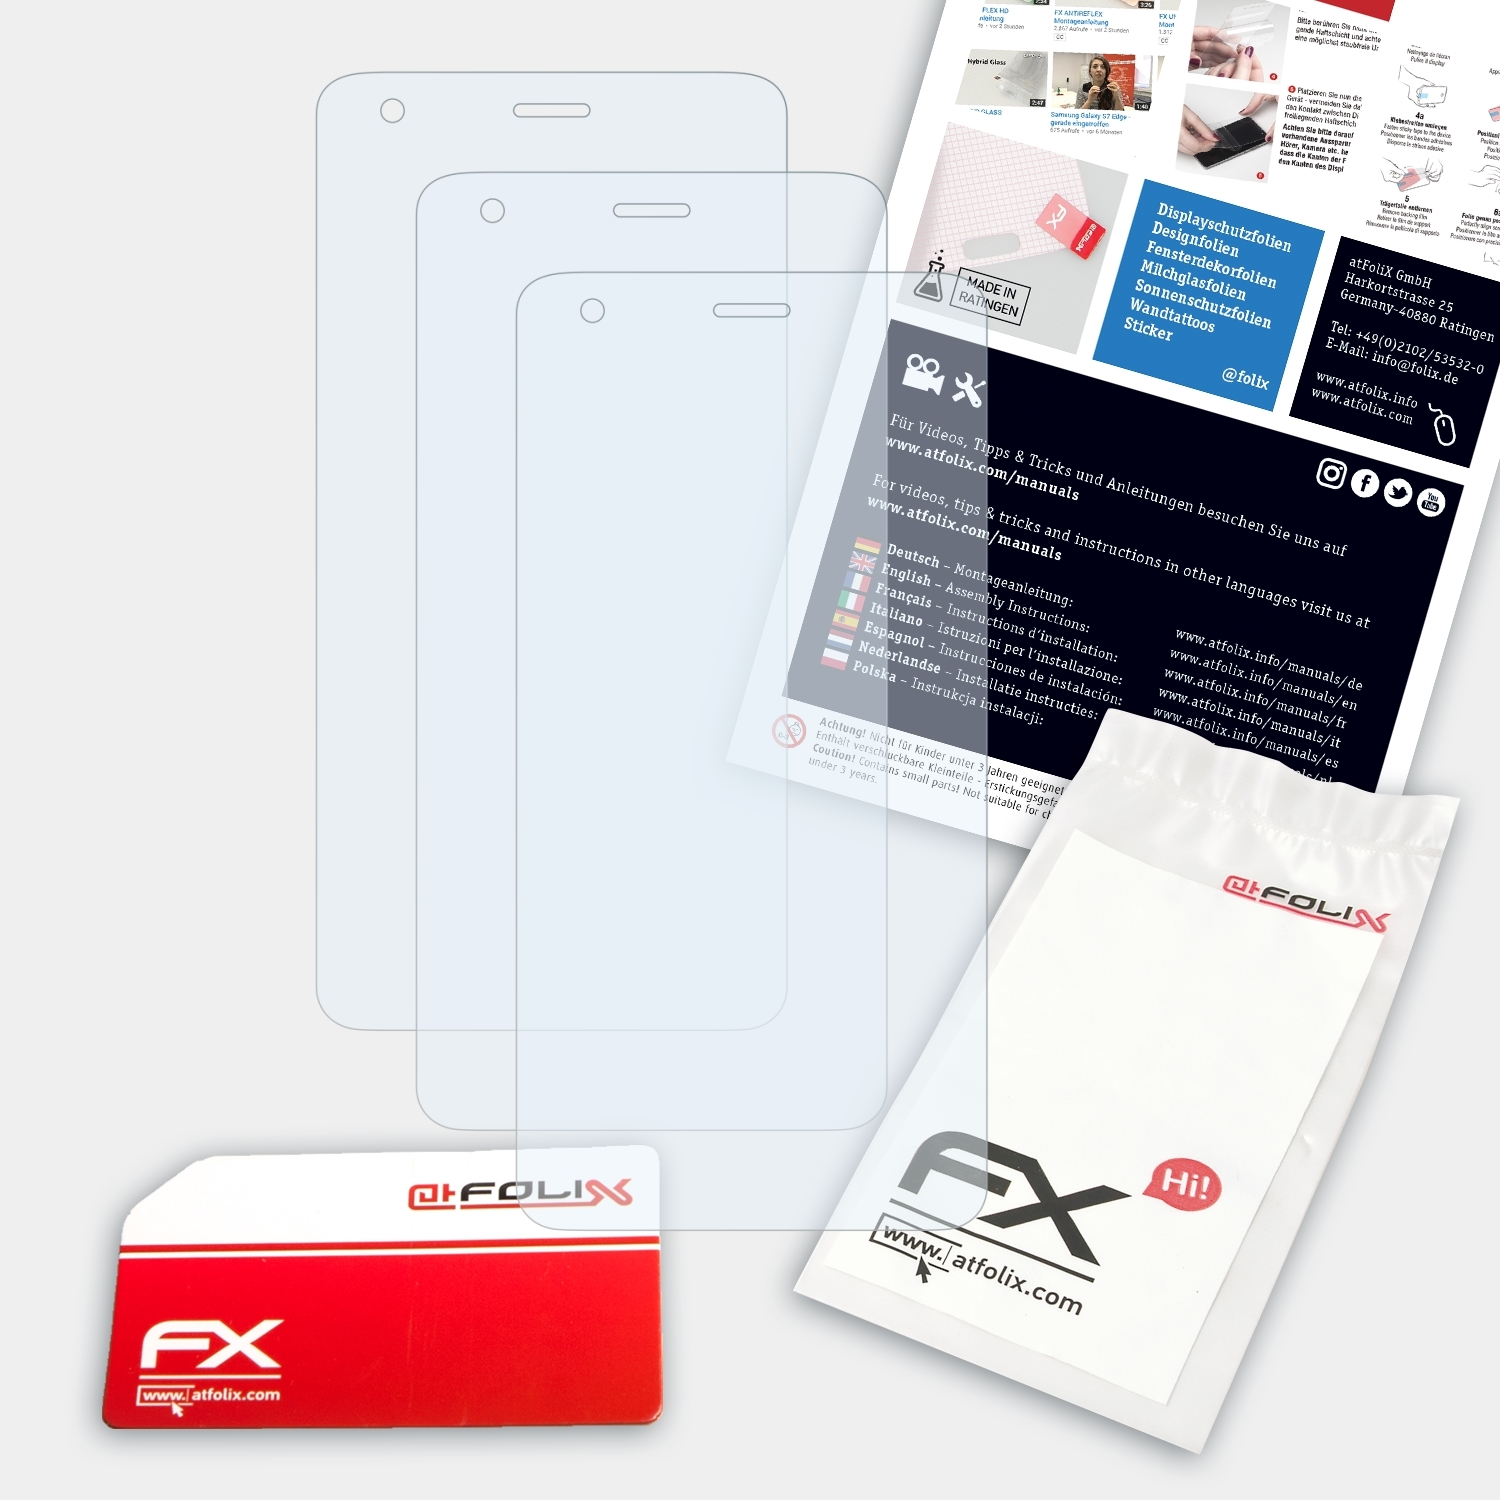 ATFOLIX 3x FX-Clear Redmi Displayschutz(für 2) Xiaomi